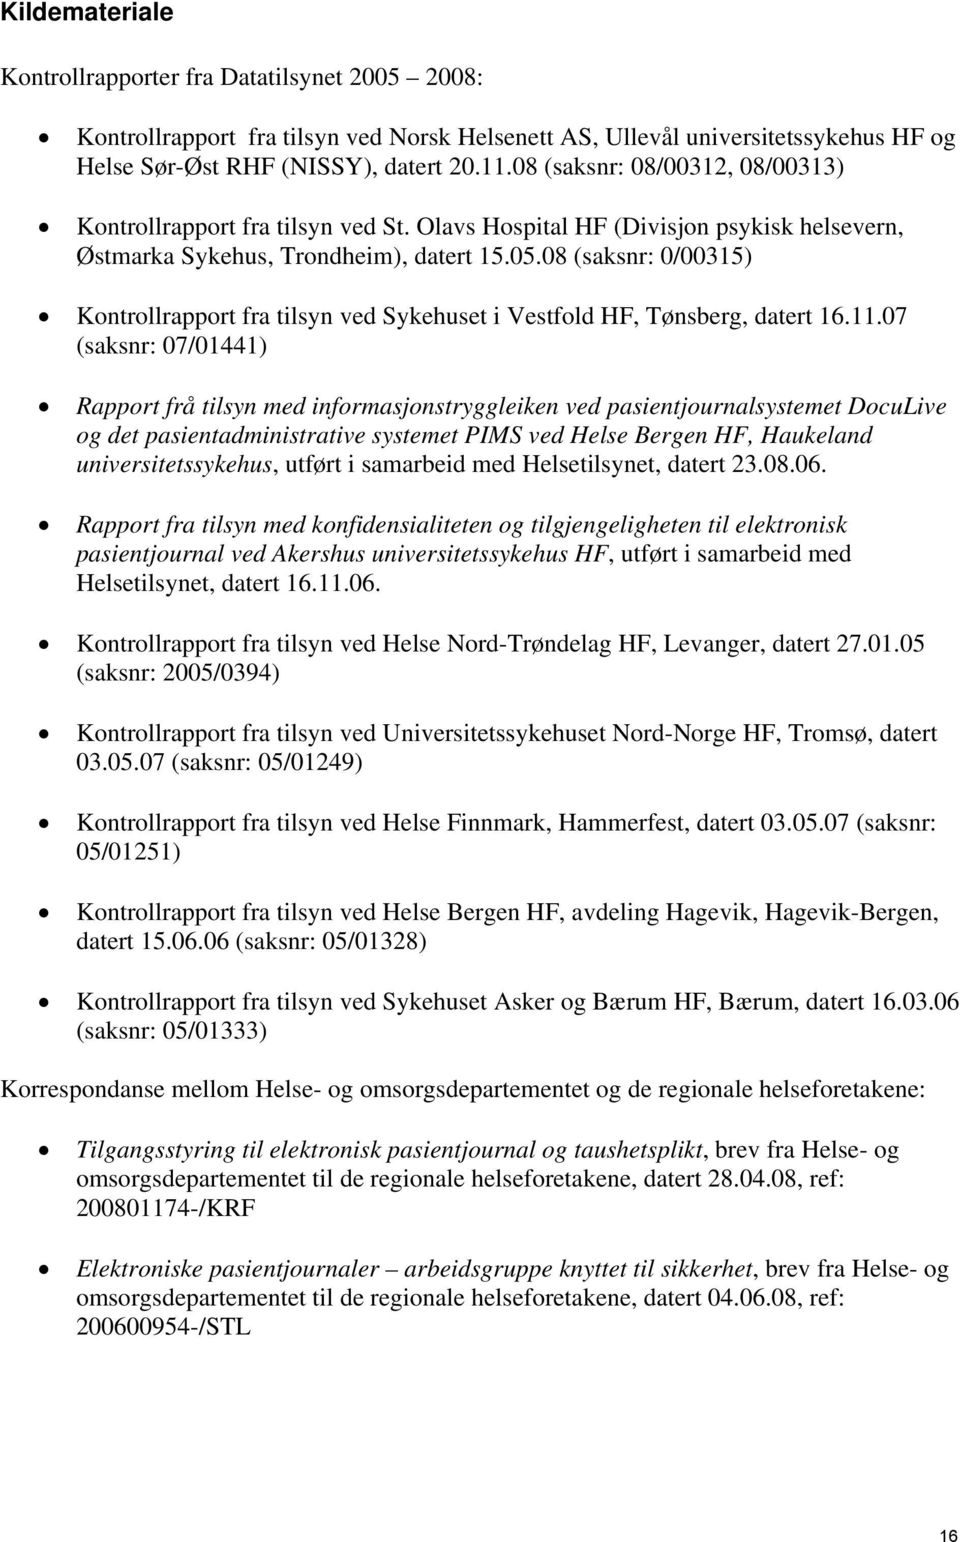 08 (saksnr: 0/00315) Kontrollrapport fra tilsyn ved Sykehuset i Vestfold HF, Tønsberg, datert 16.11.